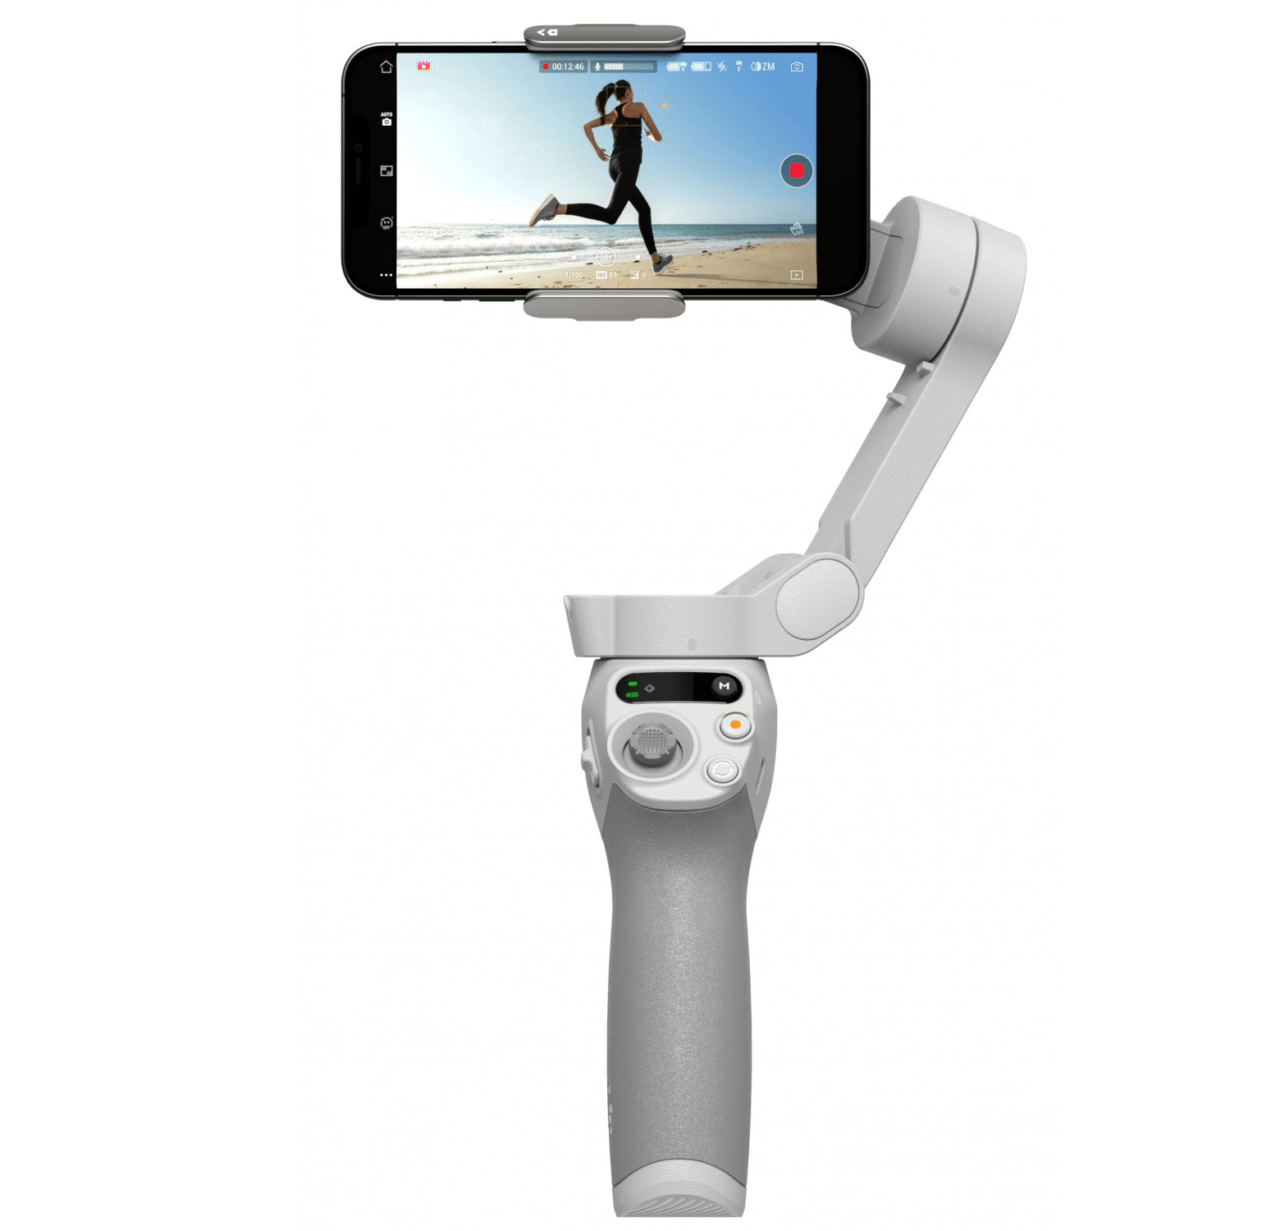 Smartfon zamocowany na ręcznym gimbalu stabilizującym obraz, wyświetlający kobietę biegnącą po plaży.